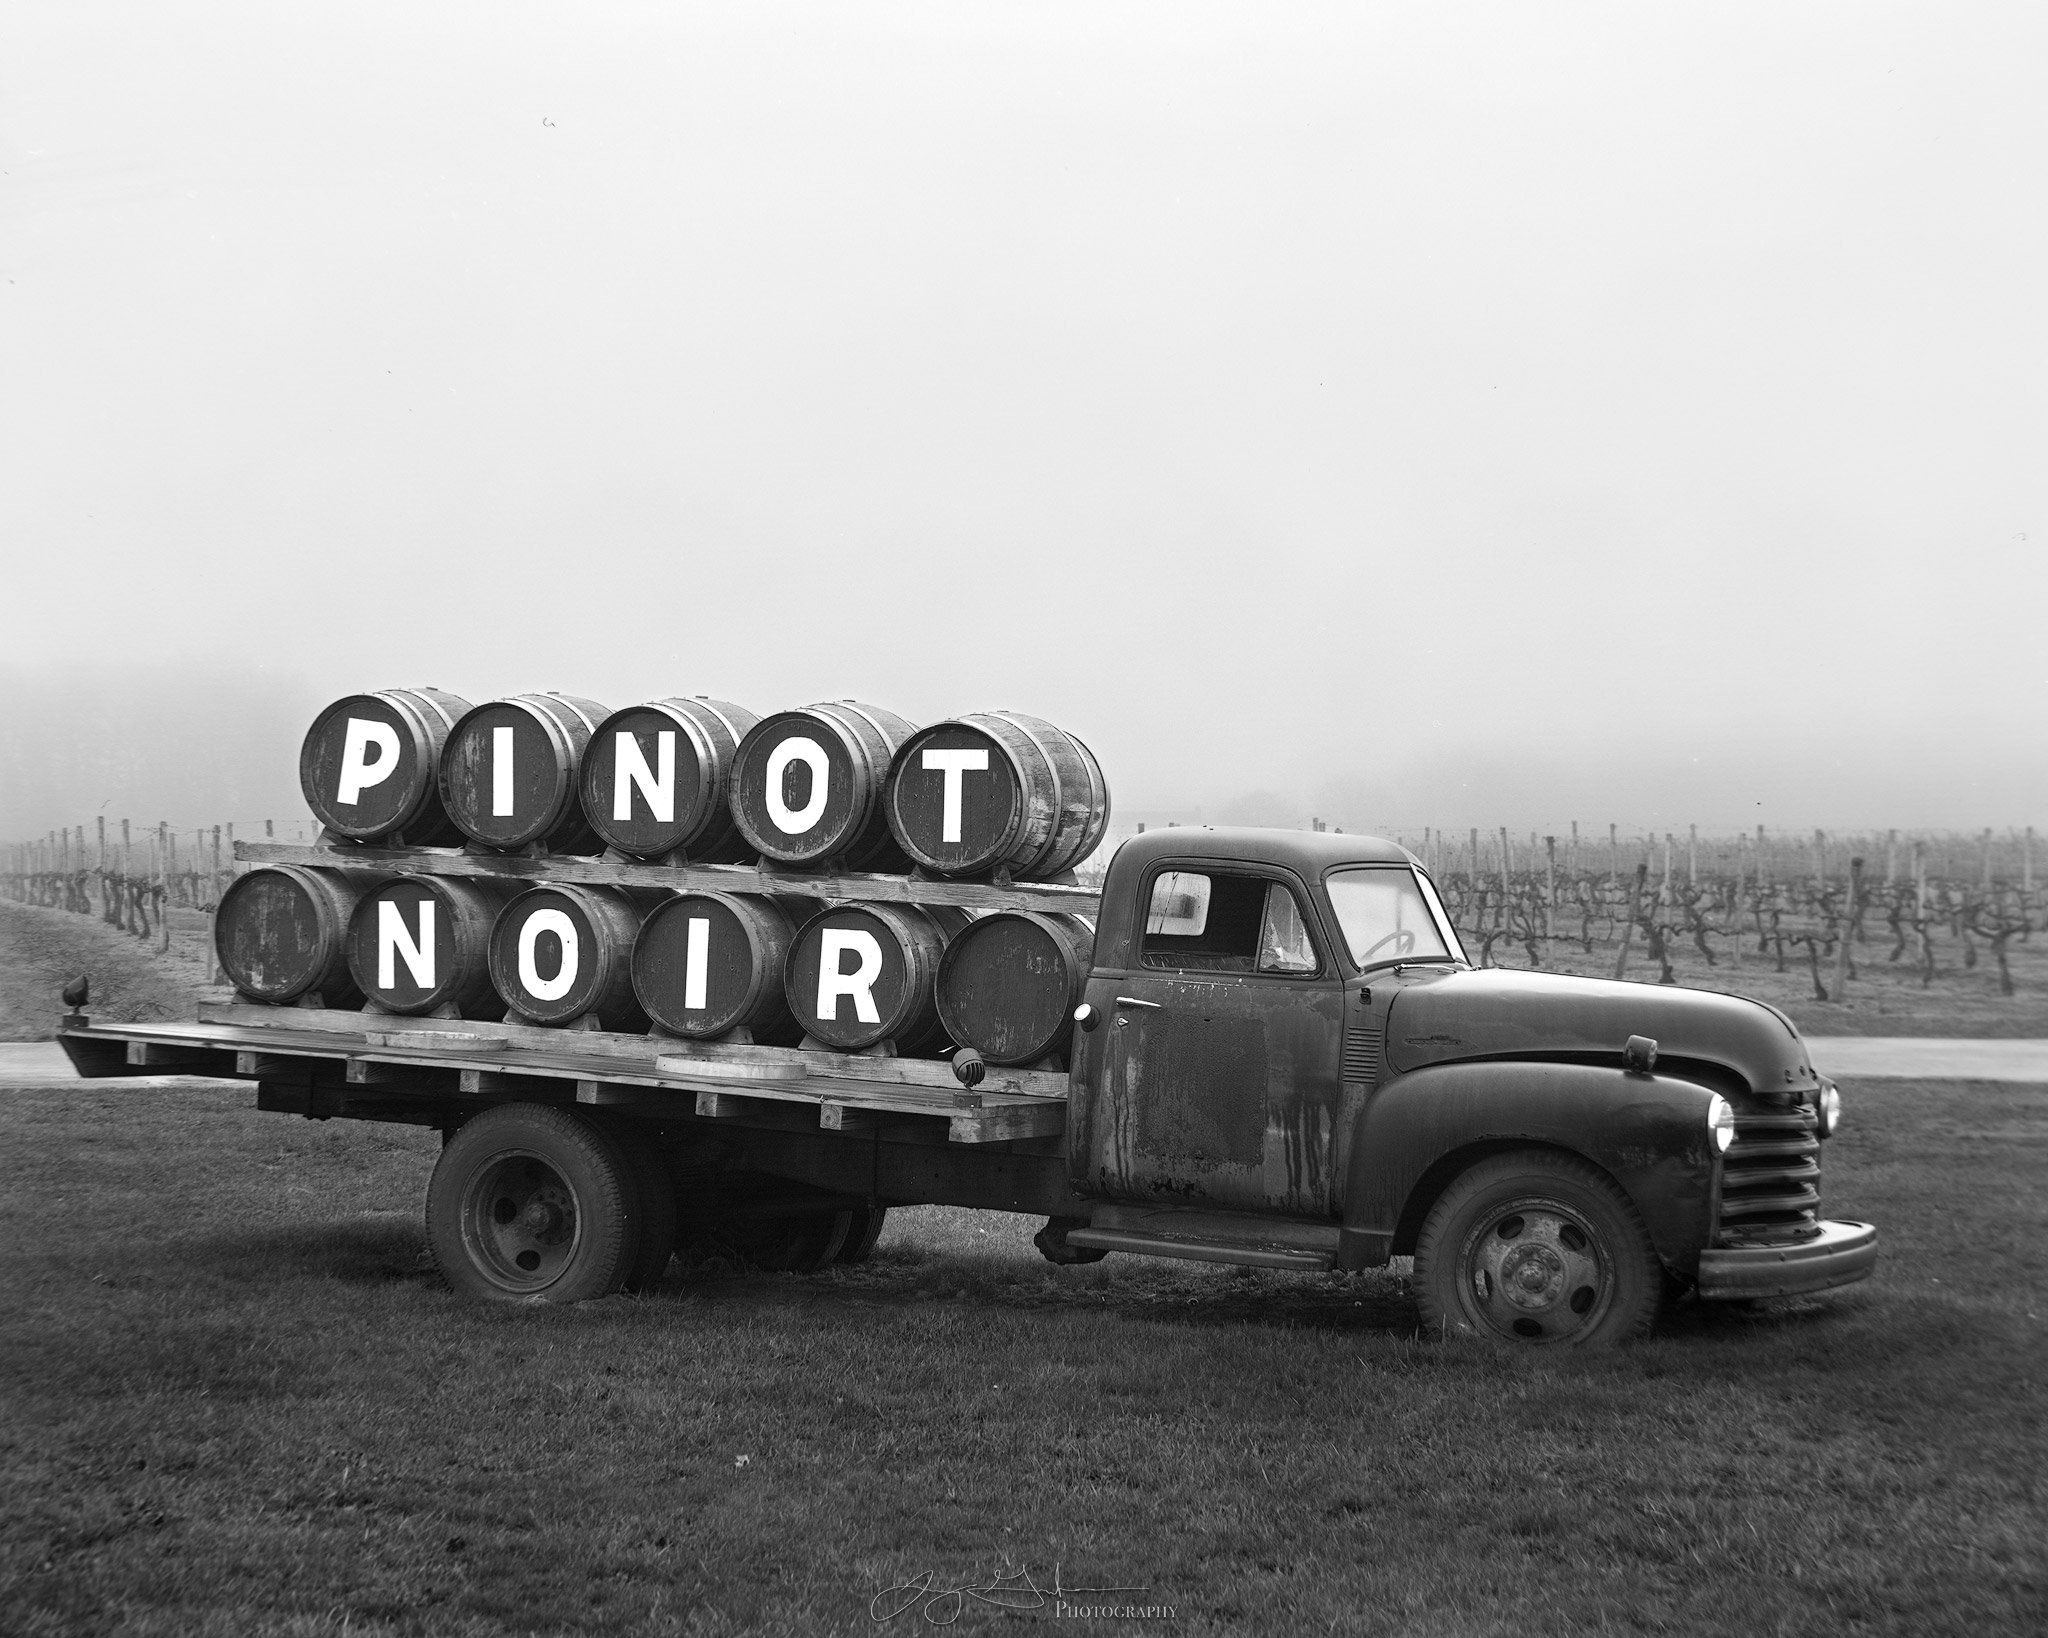 Pinot-Noir-Truck-Film-sharpened.jpg